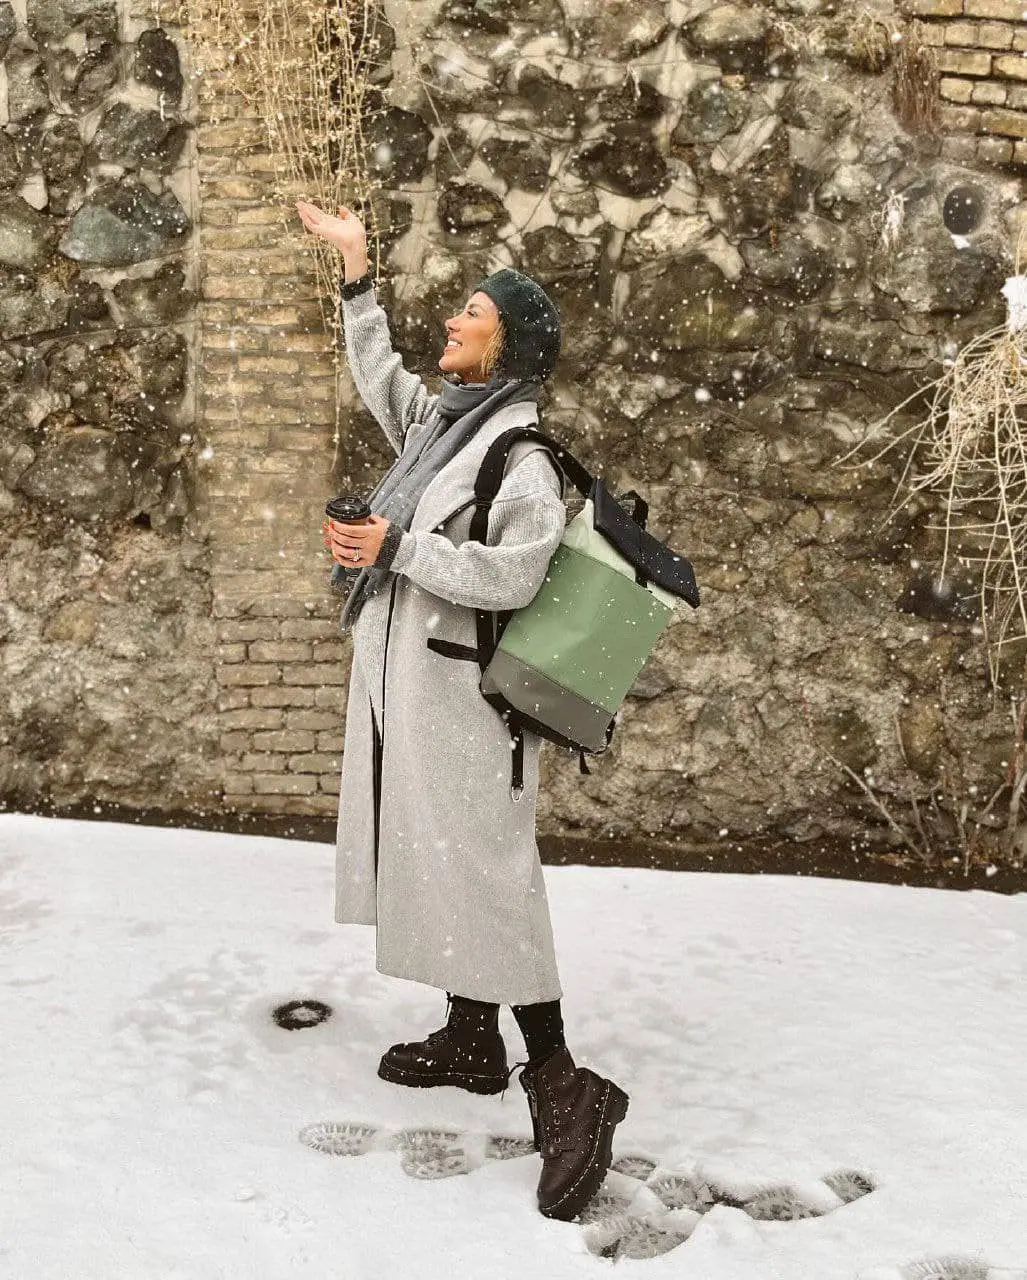 مینا مختاری در برف